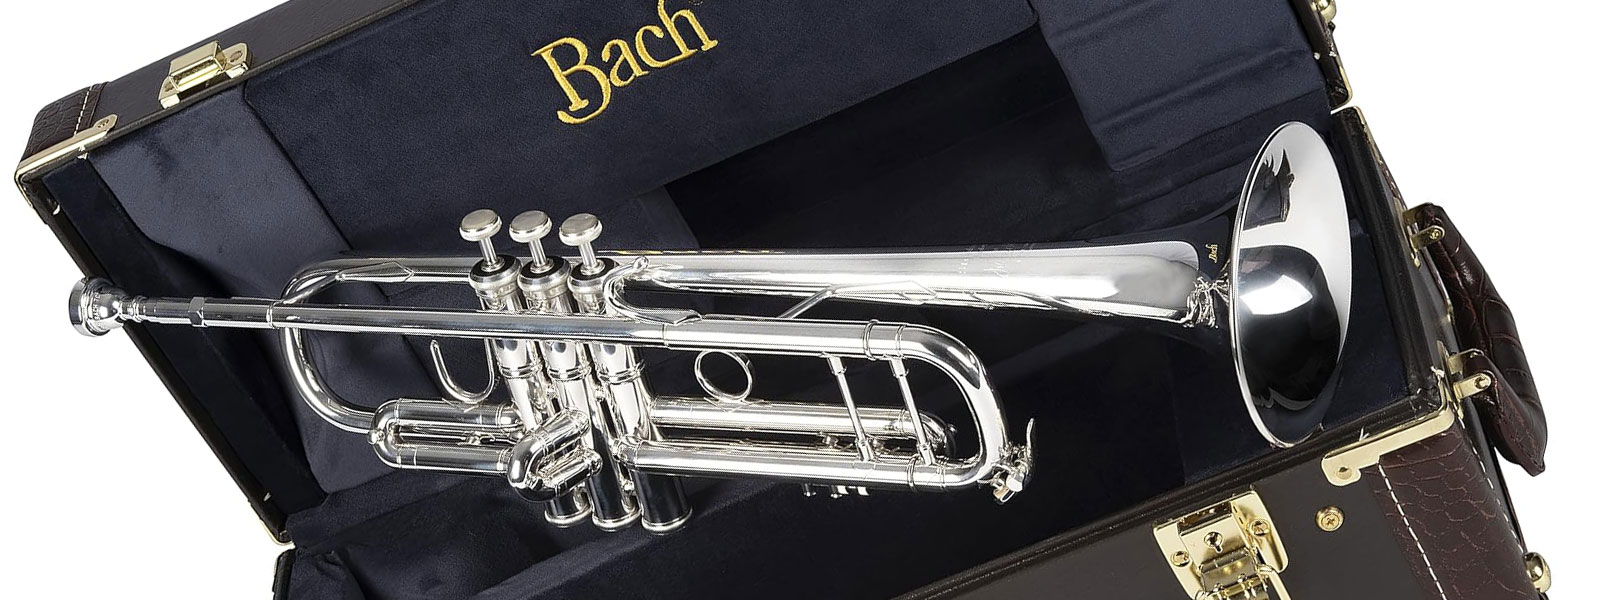 Bach es reconocido como uno de los principales fabricantes de instrumentos de viento metal del mundo